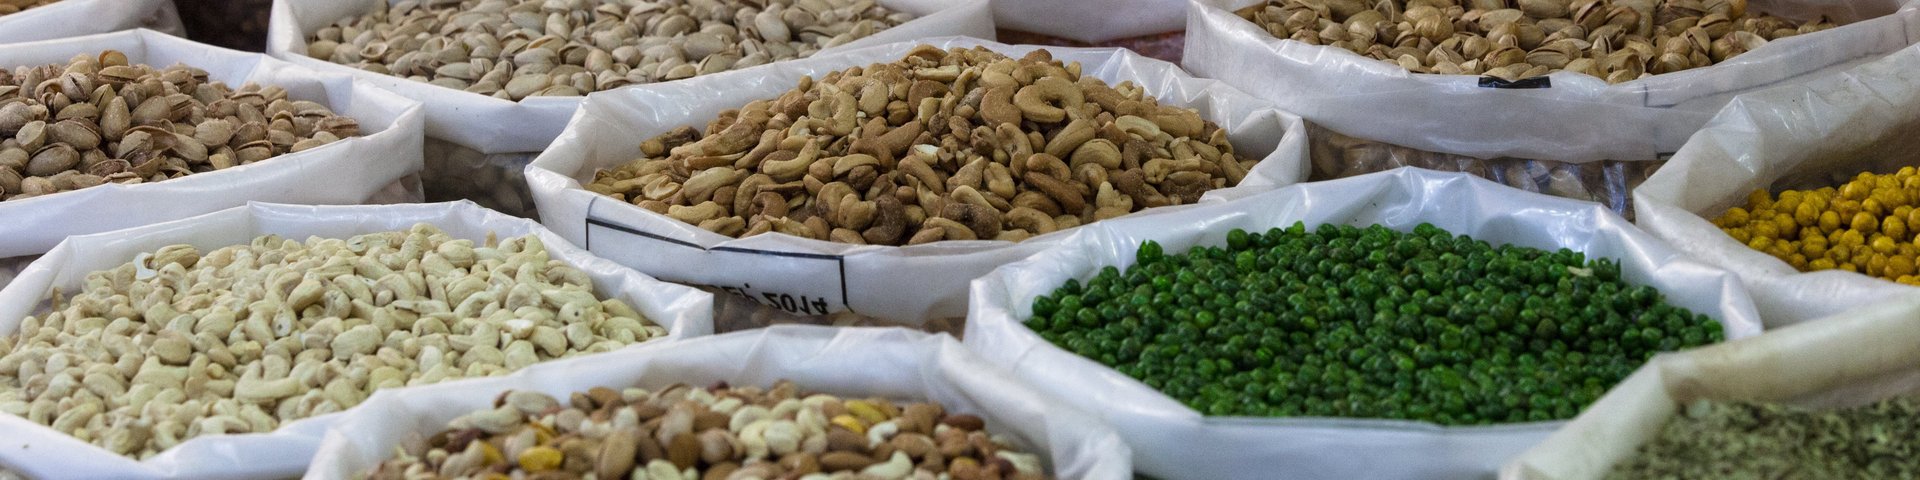 Säcke voll mit Nüssen, Mandeln, Erbsen und Gewürzen auf dem Souk in Nizwa